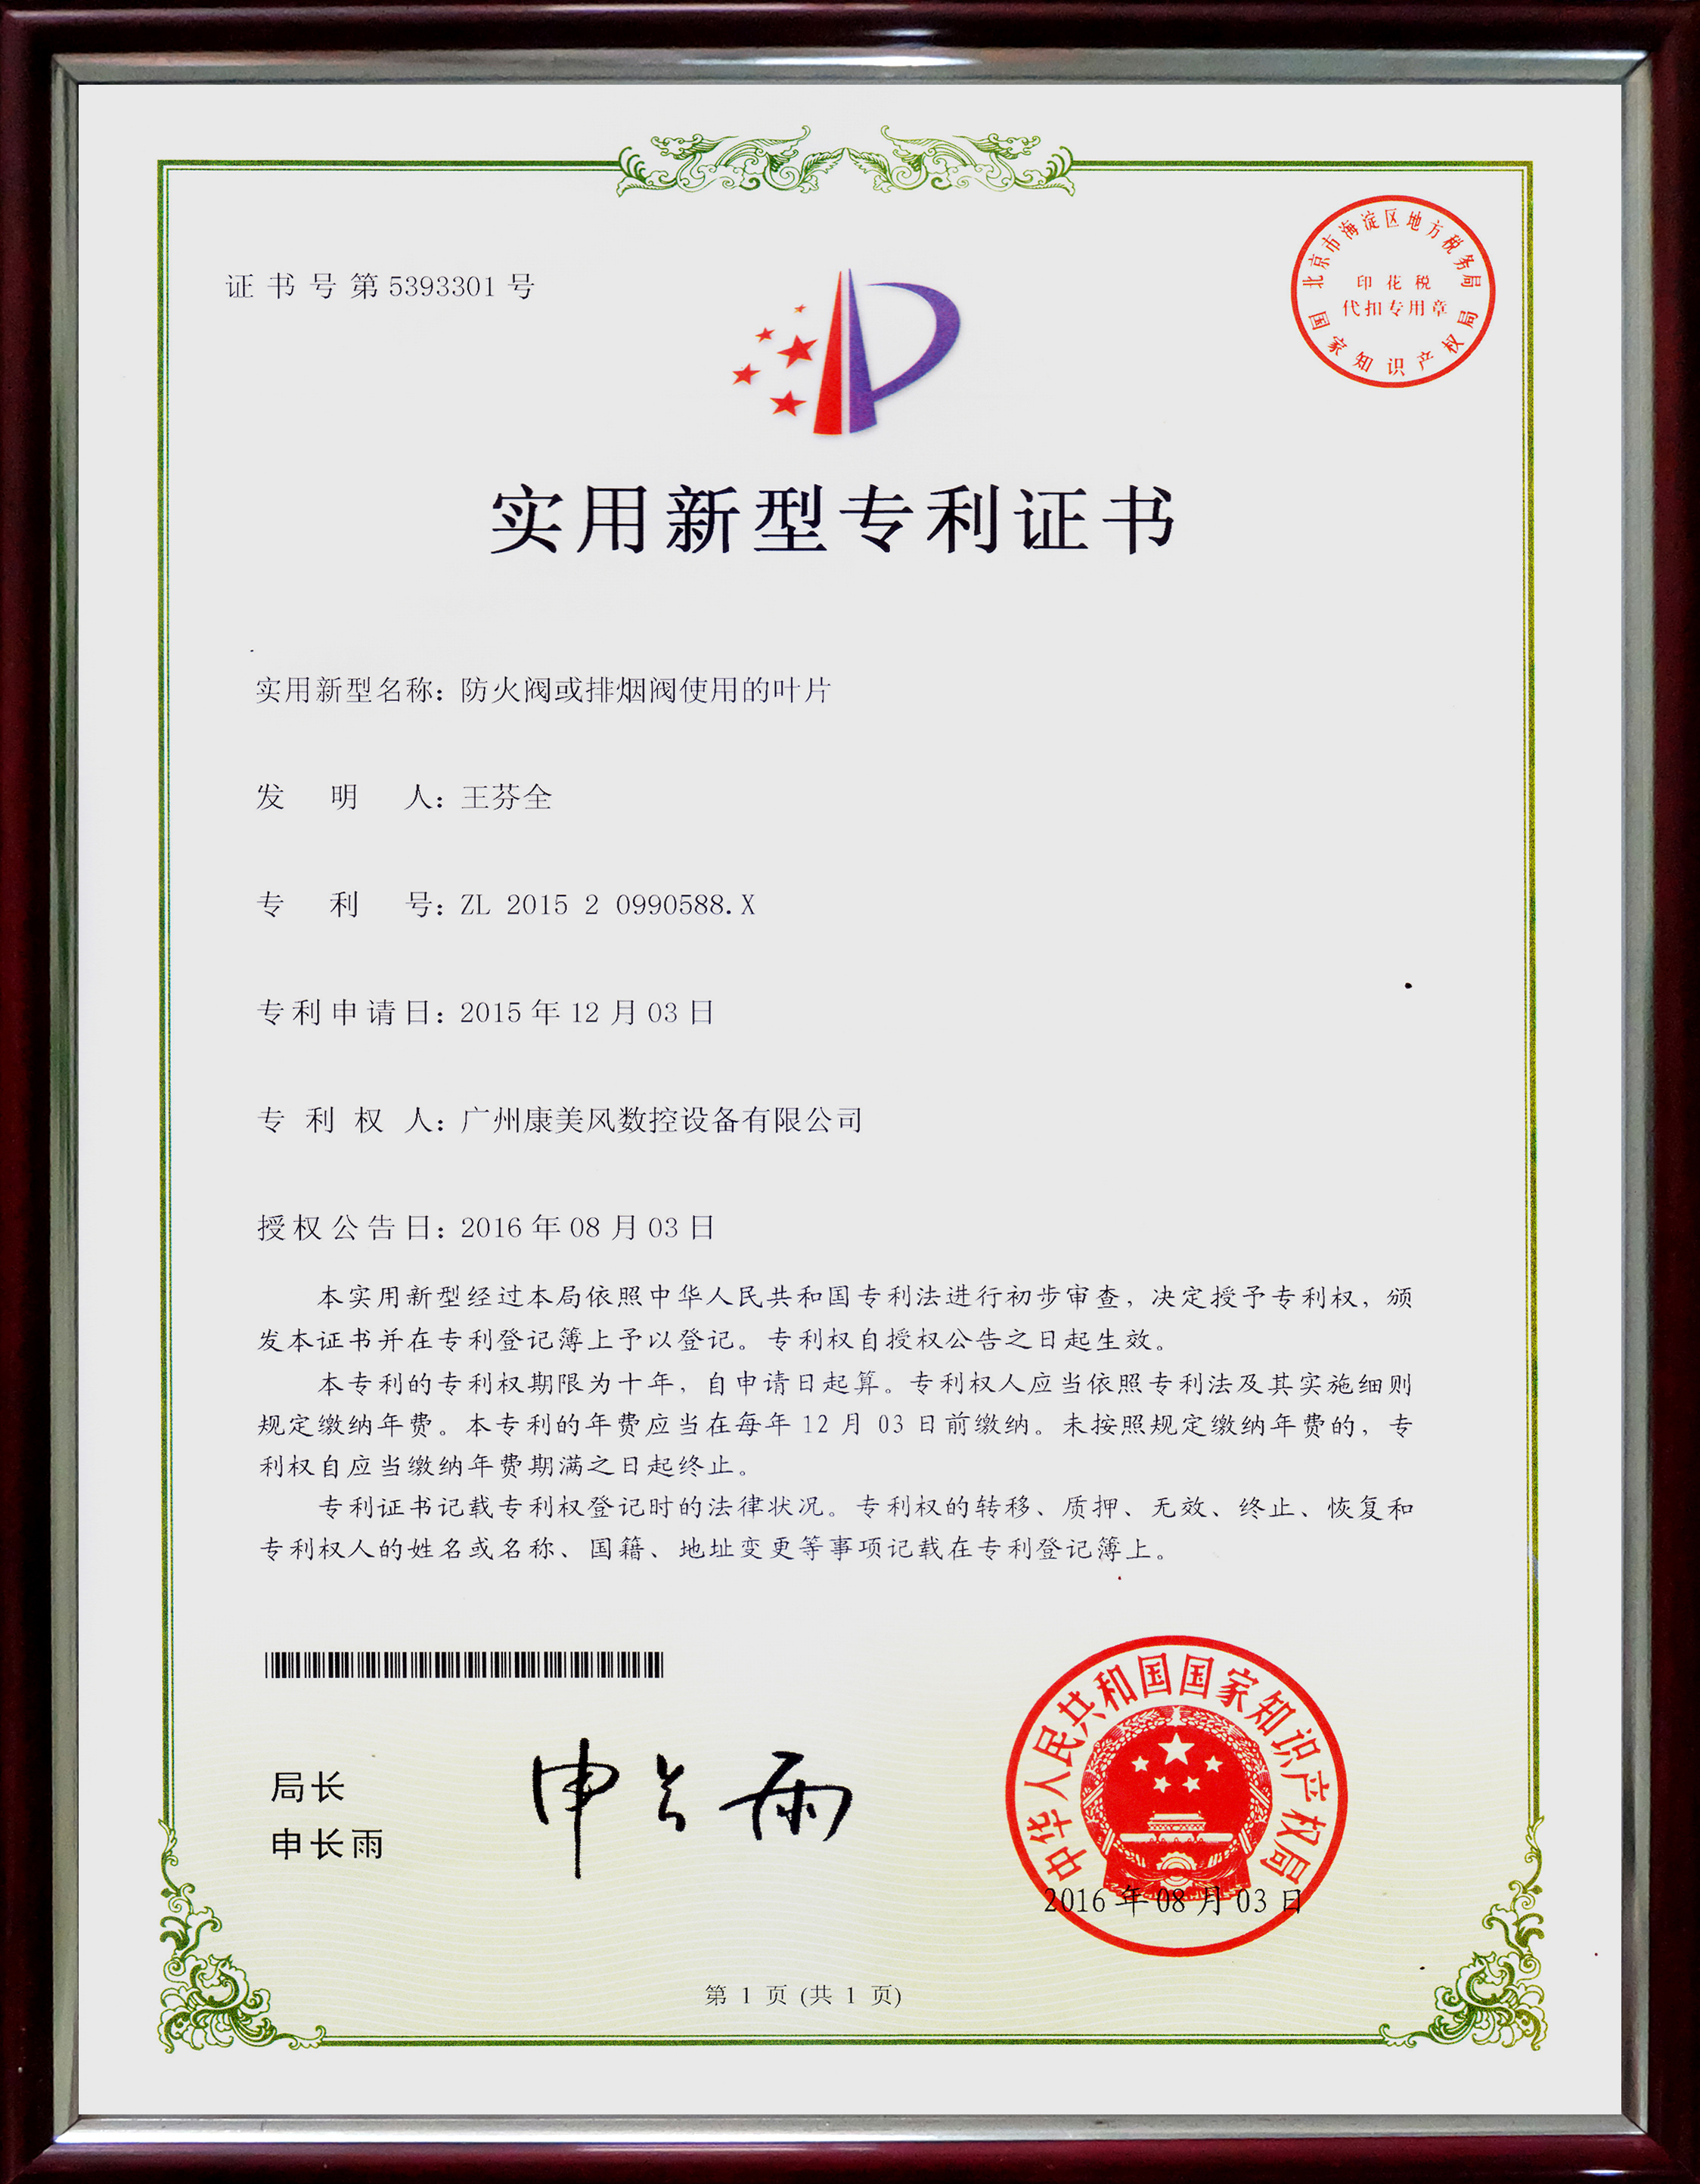 Fire damper blade patent certificate